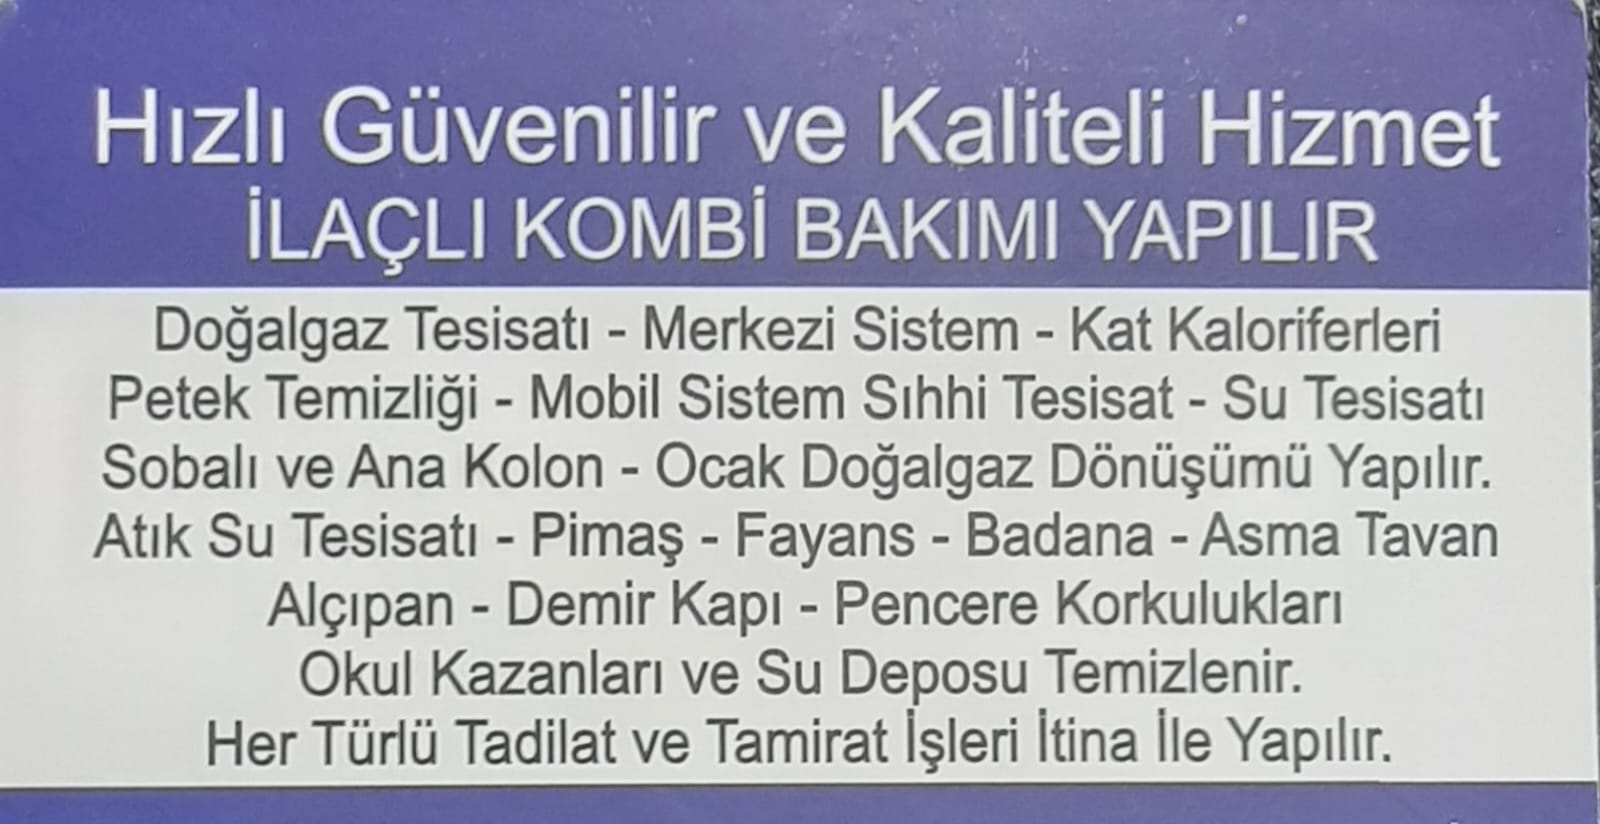 İstanbul Isı Mühendislik Ve Sıhhi Tesisat Firması & Casimoğulları Isı Mühendislik